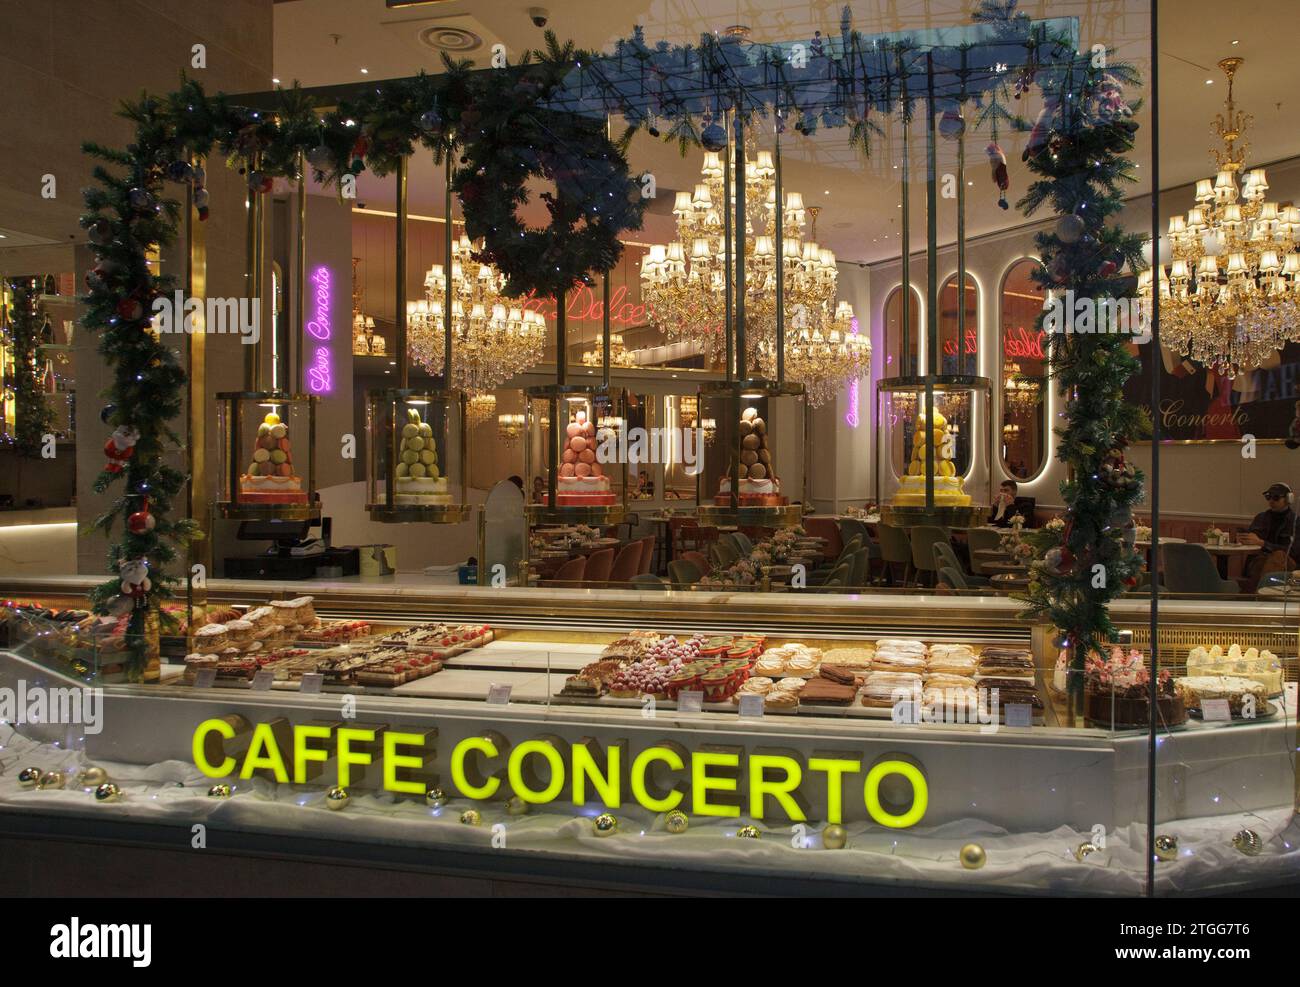 La vetrina natalizia dell'elegante Caffe Concerto, che si trova in una posizione privilegiata nel Carrousel du Louvre, a Parigi, in Francia Foto Stock